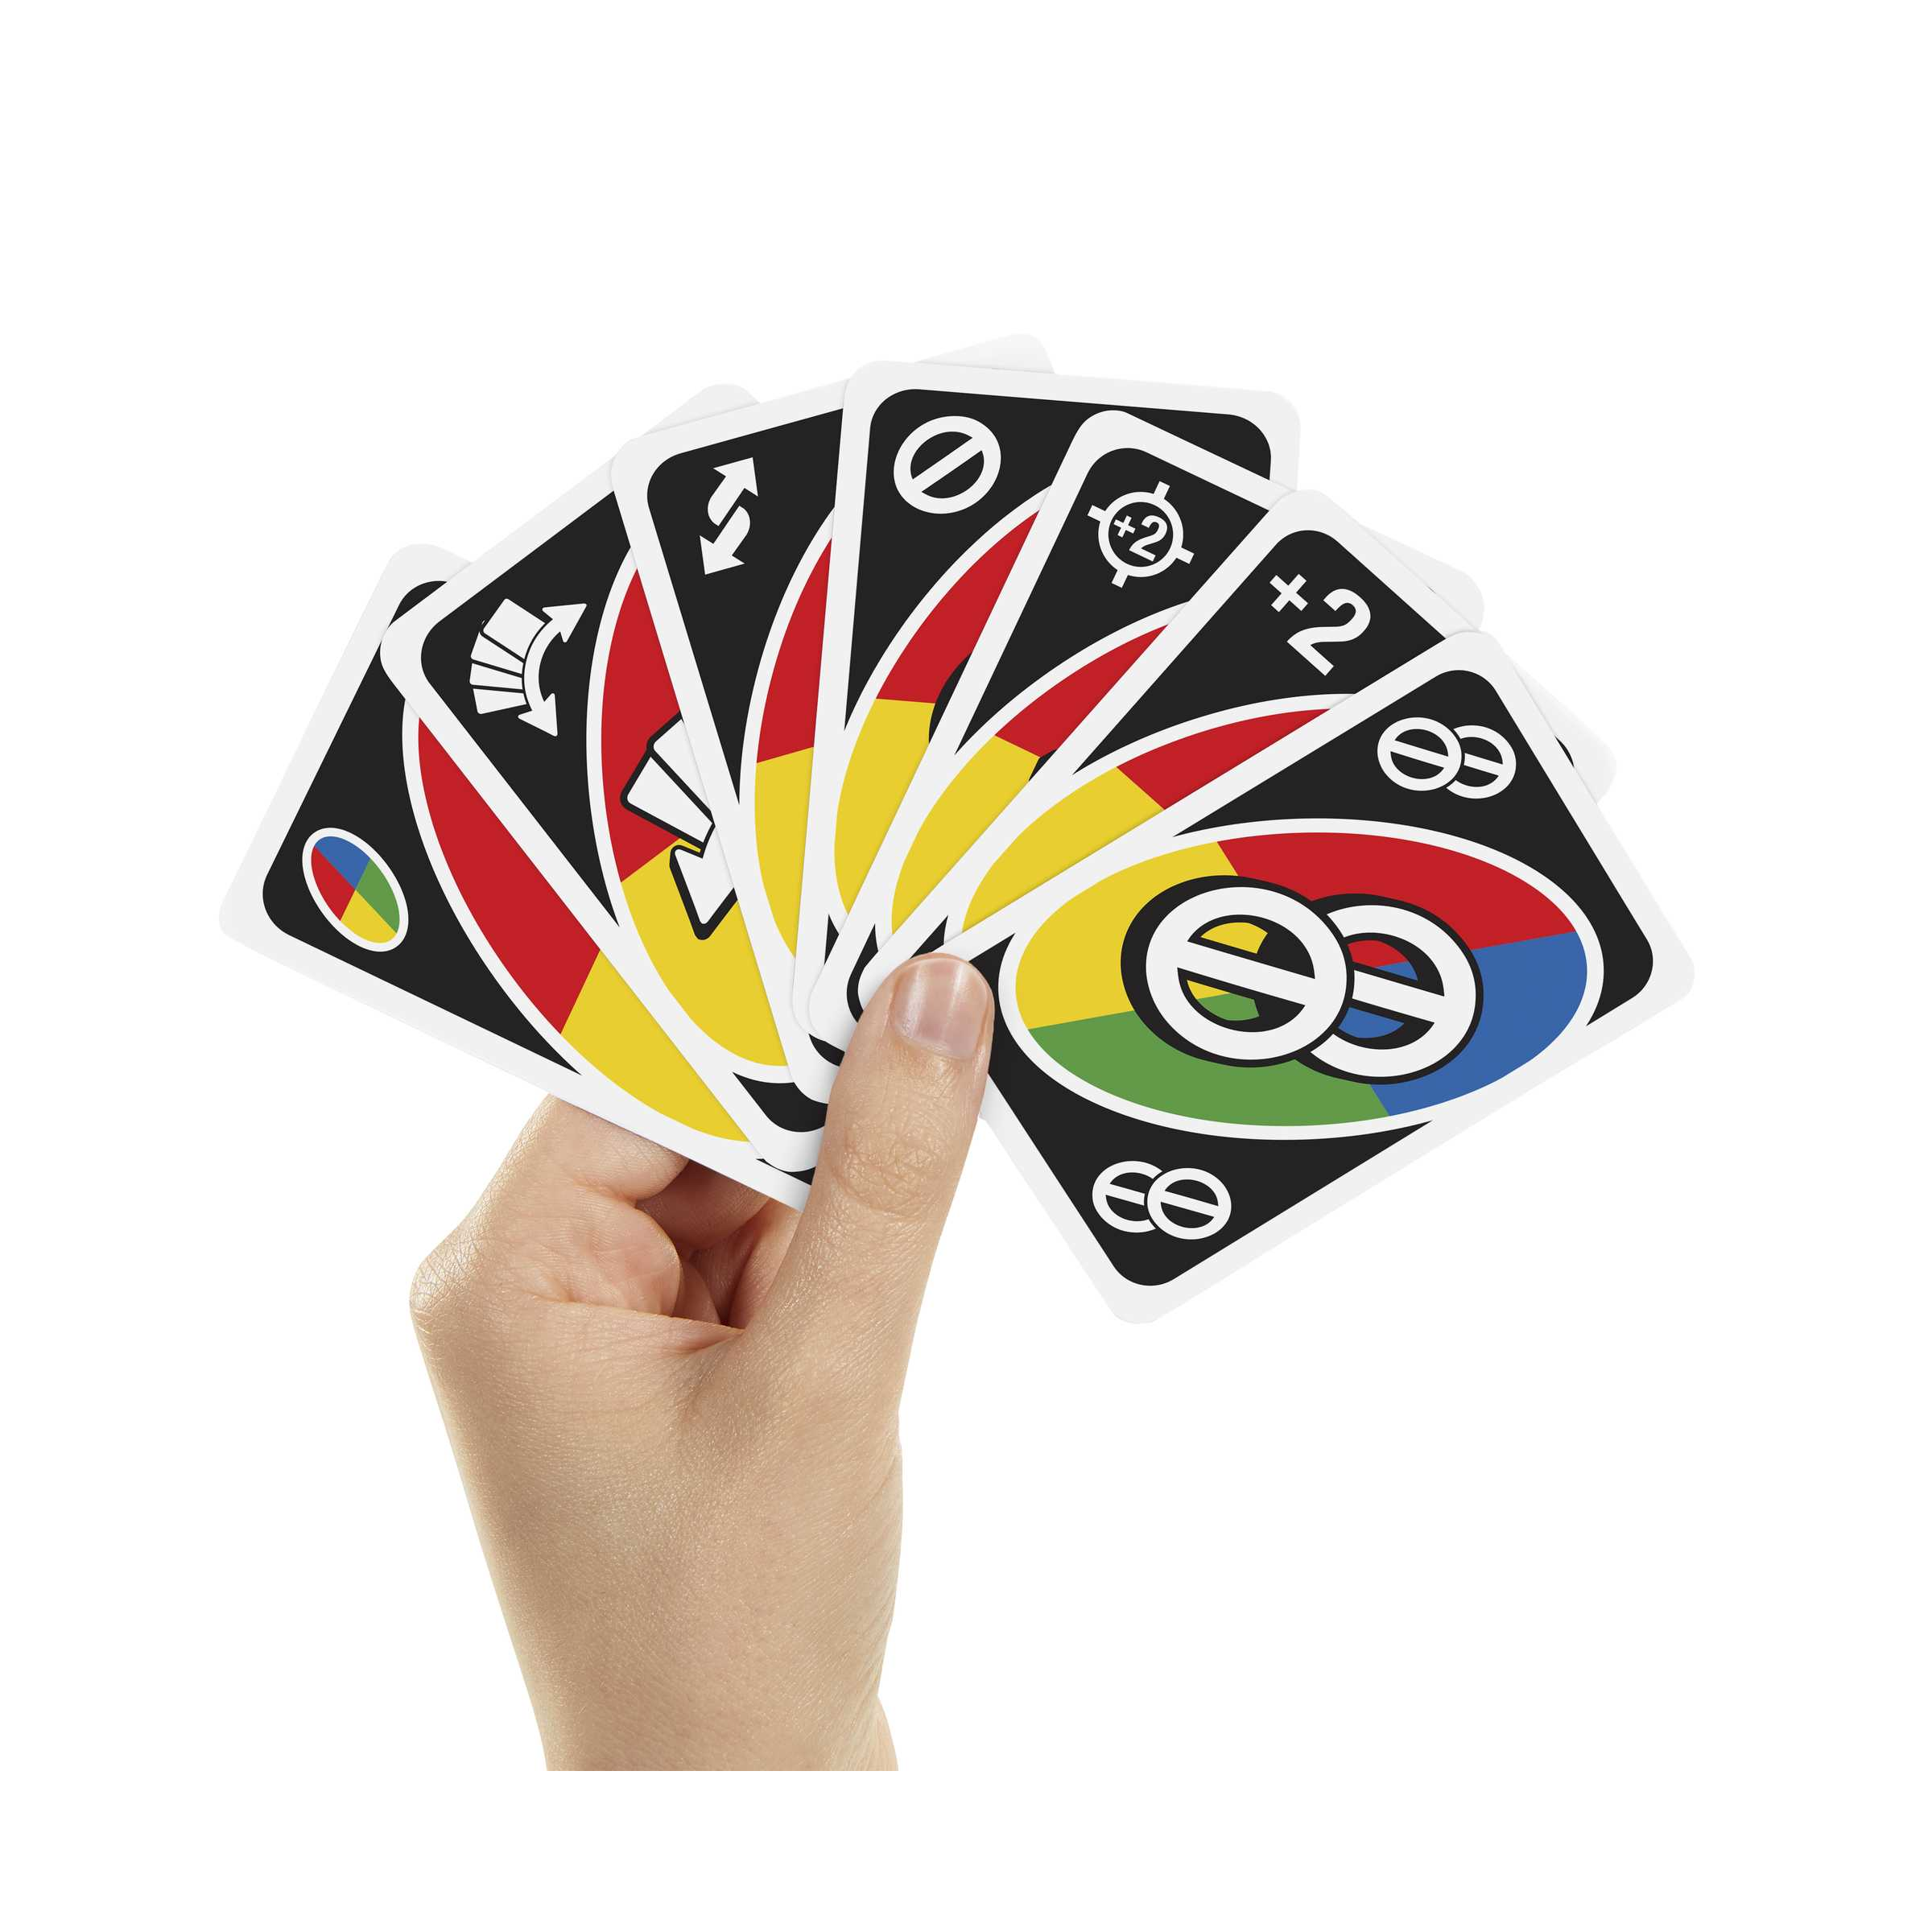 UNO gioco di carte - un bel regalo per bambini